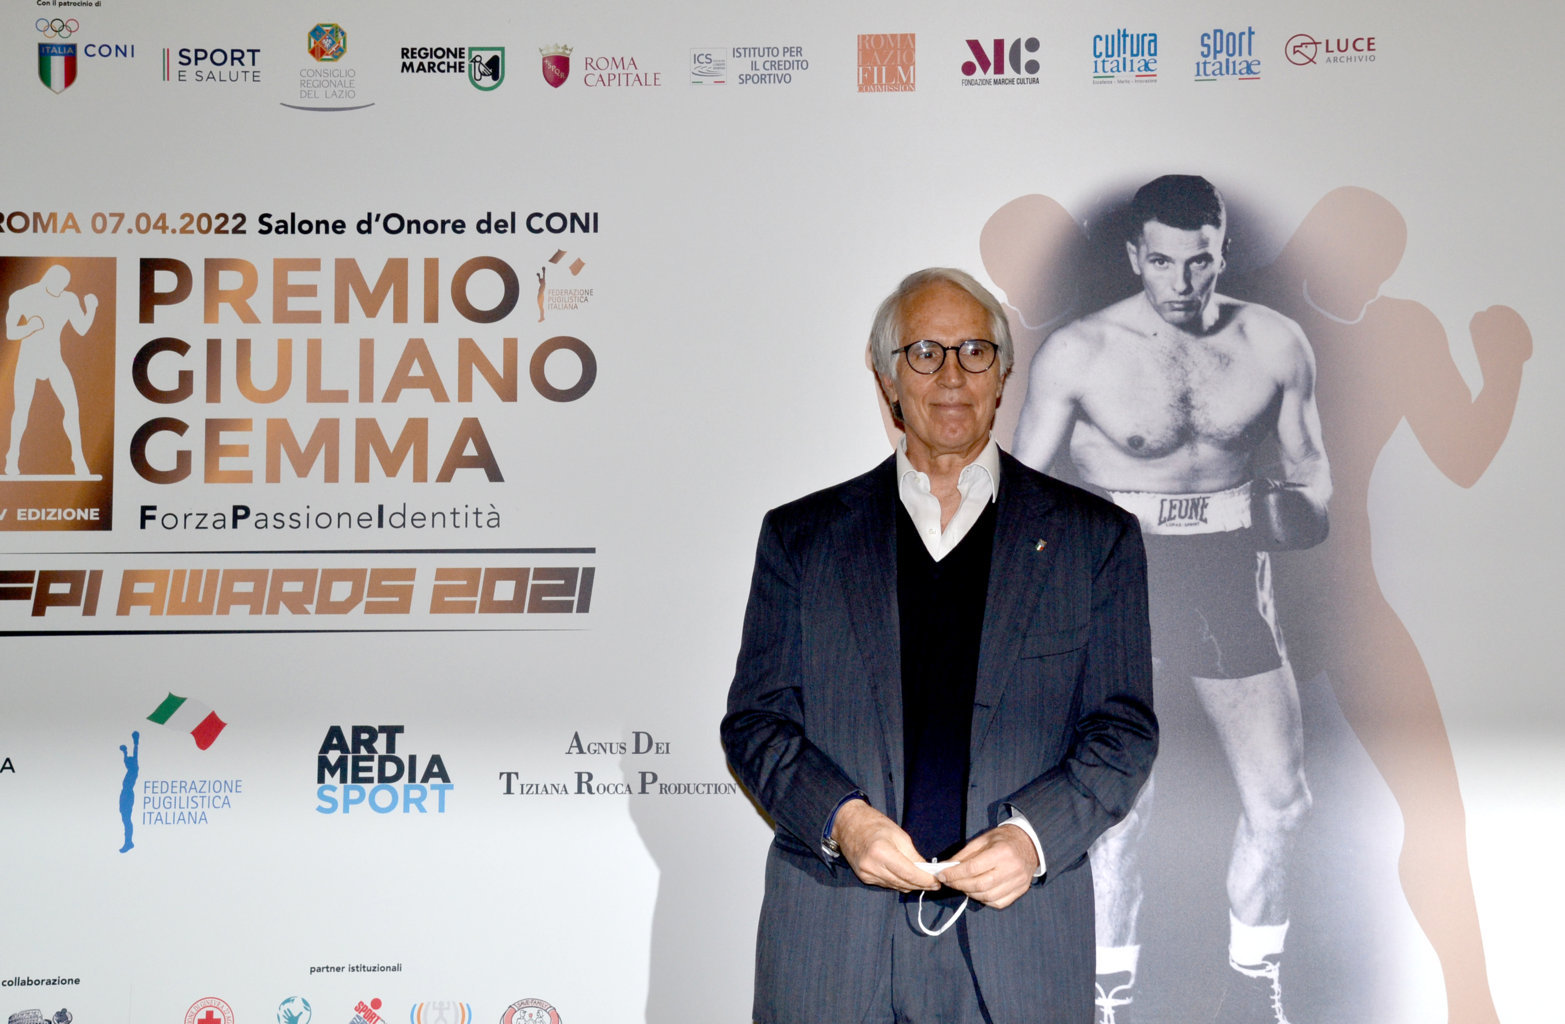 6 Premio Giuliano Gemma